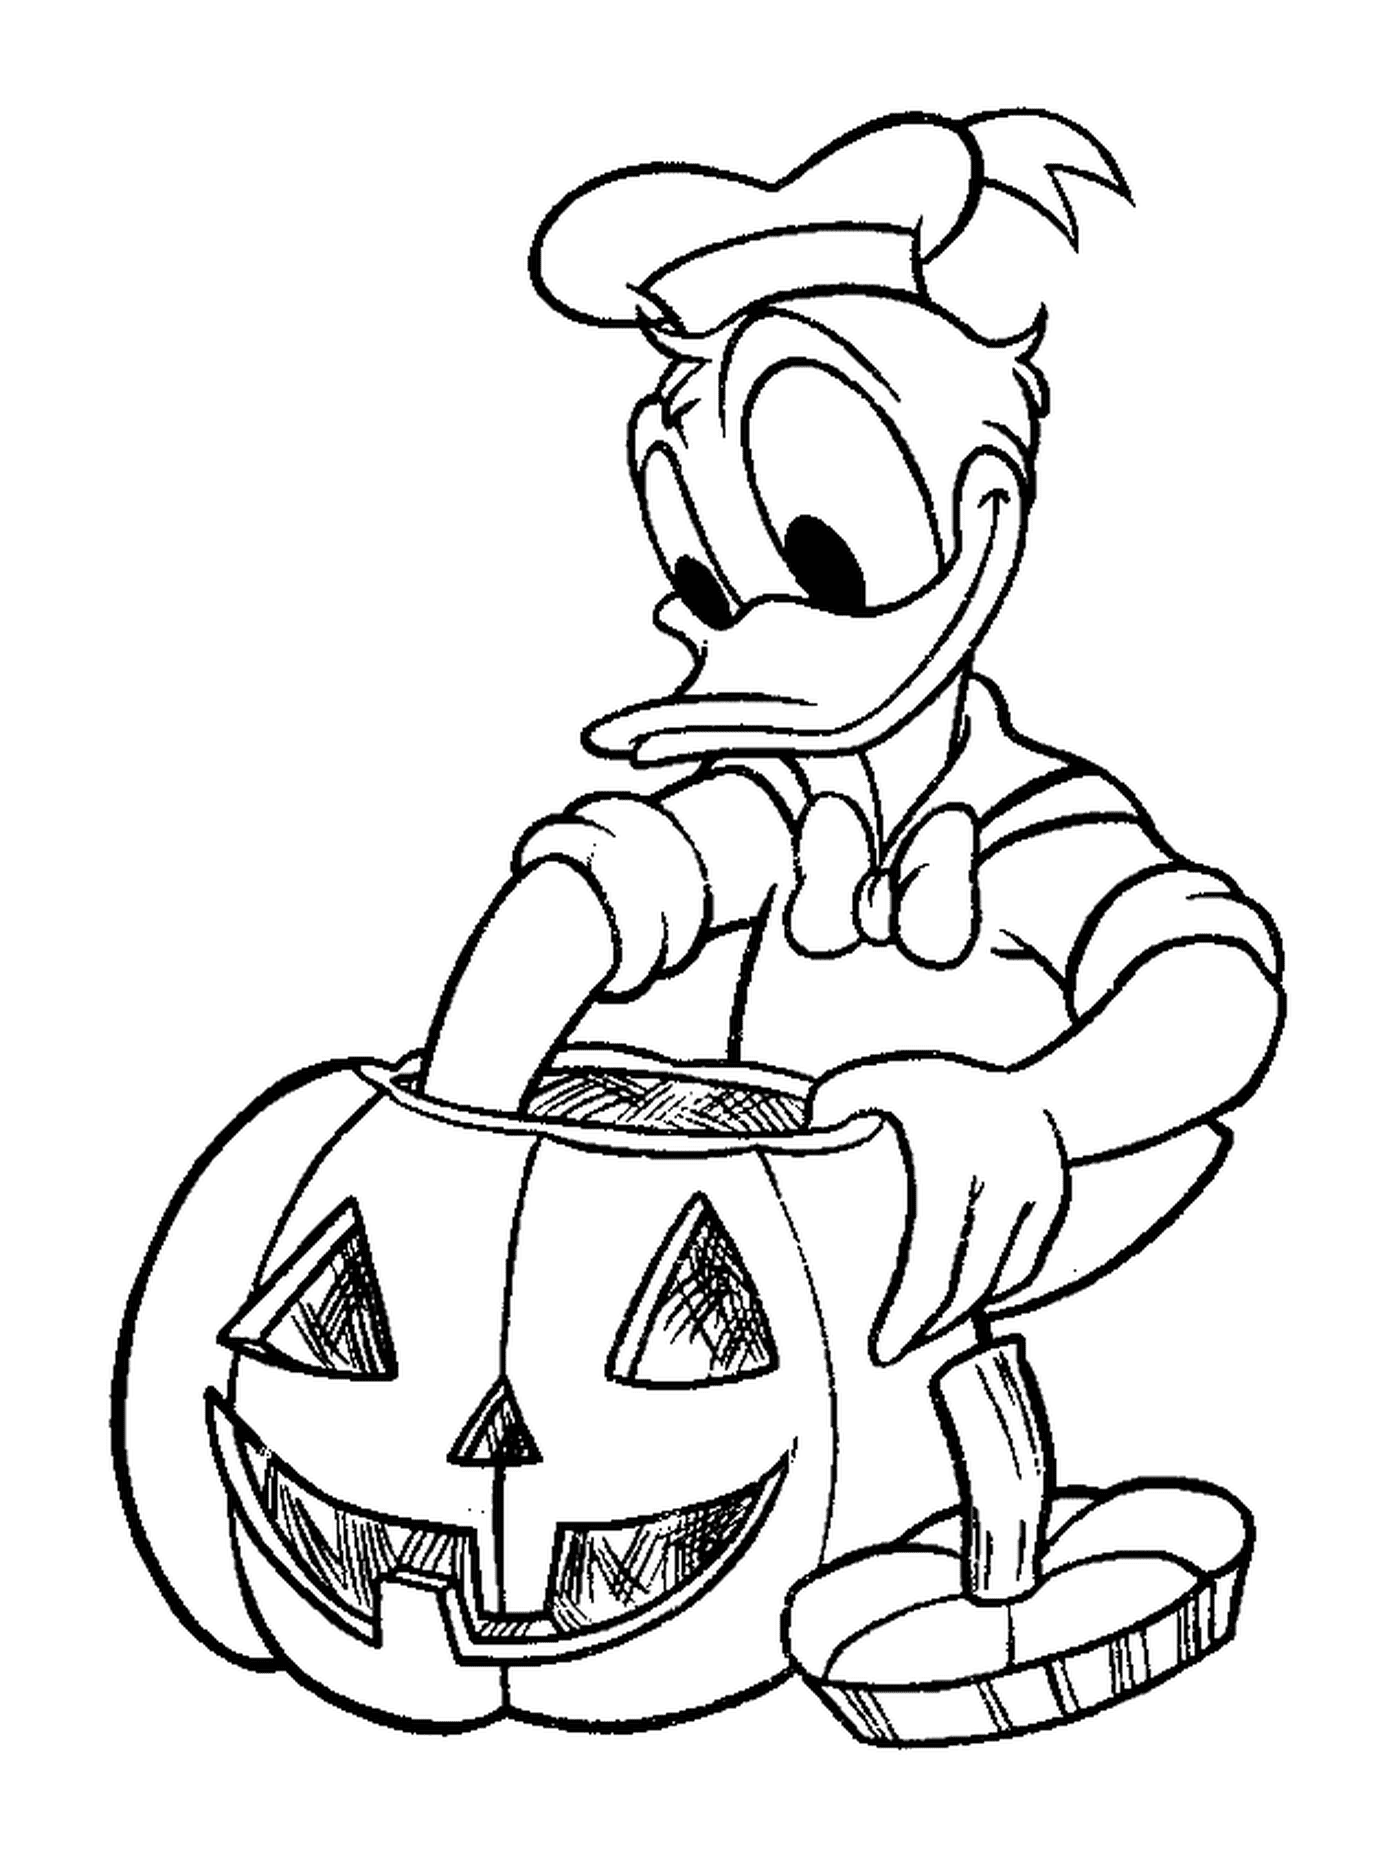  Donald fa la sua zucca per Halloween 